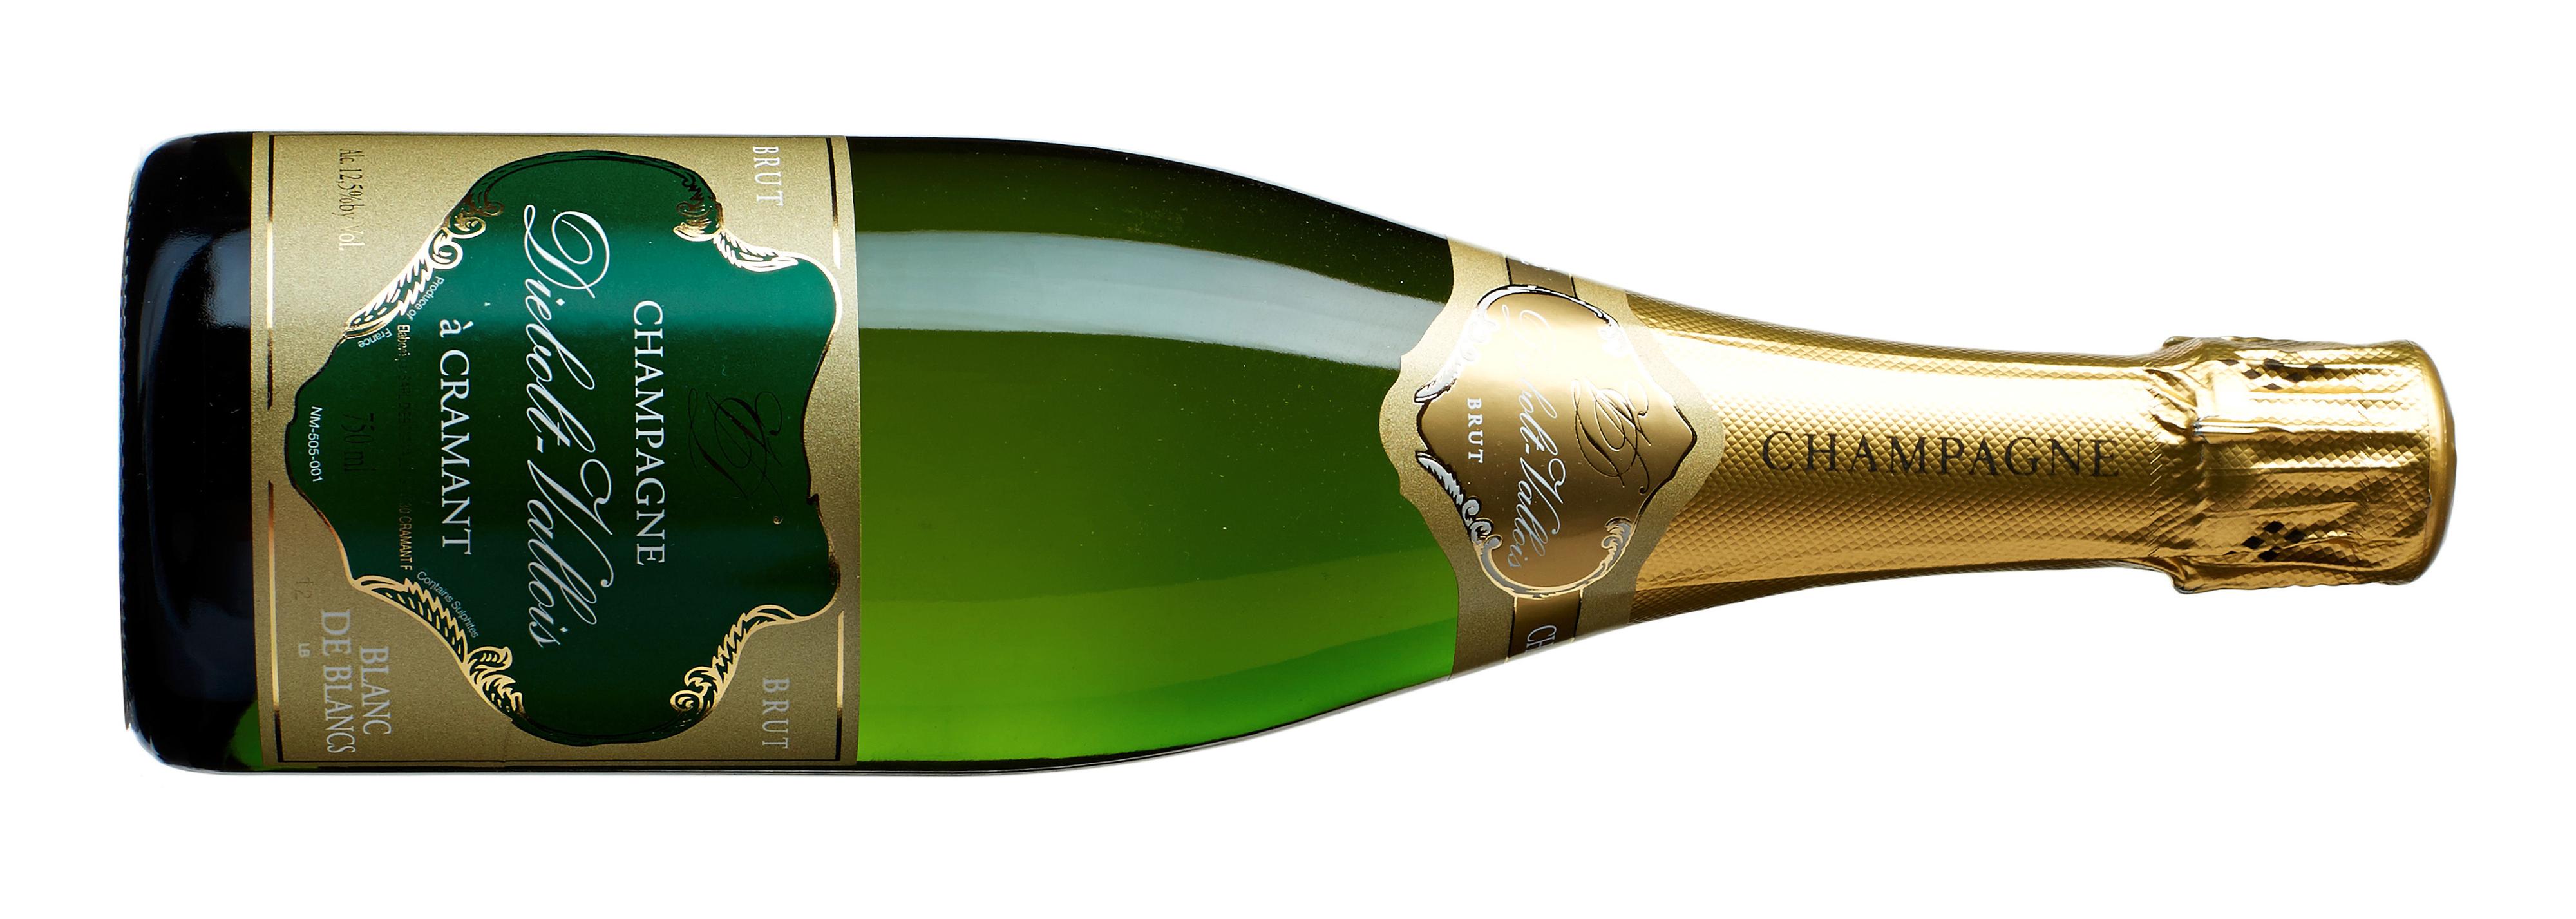 4004601 Bestillingsutvalget/lokale vinmonopol,  Poeng: 88, Land/region: Frankrike, Champagne, Druesort: Chardonnay